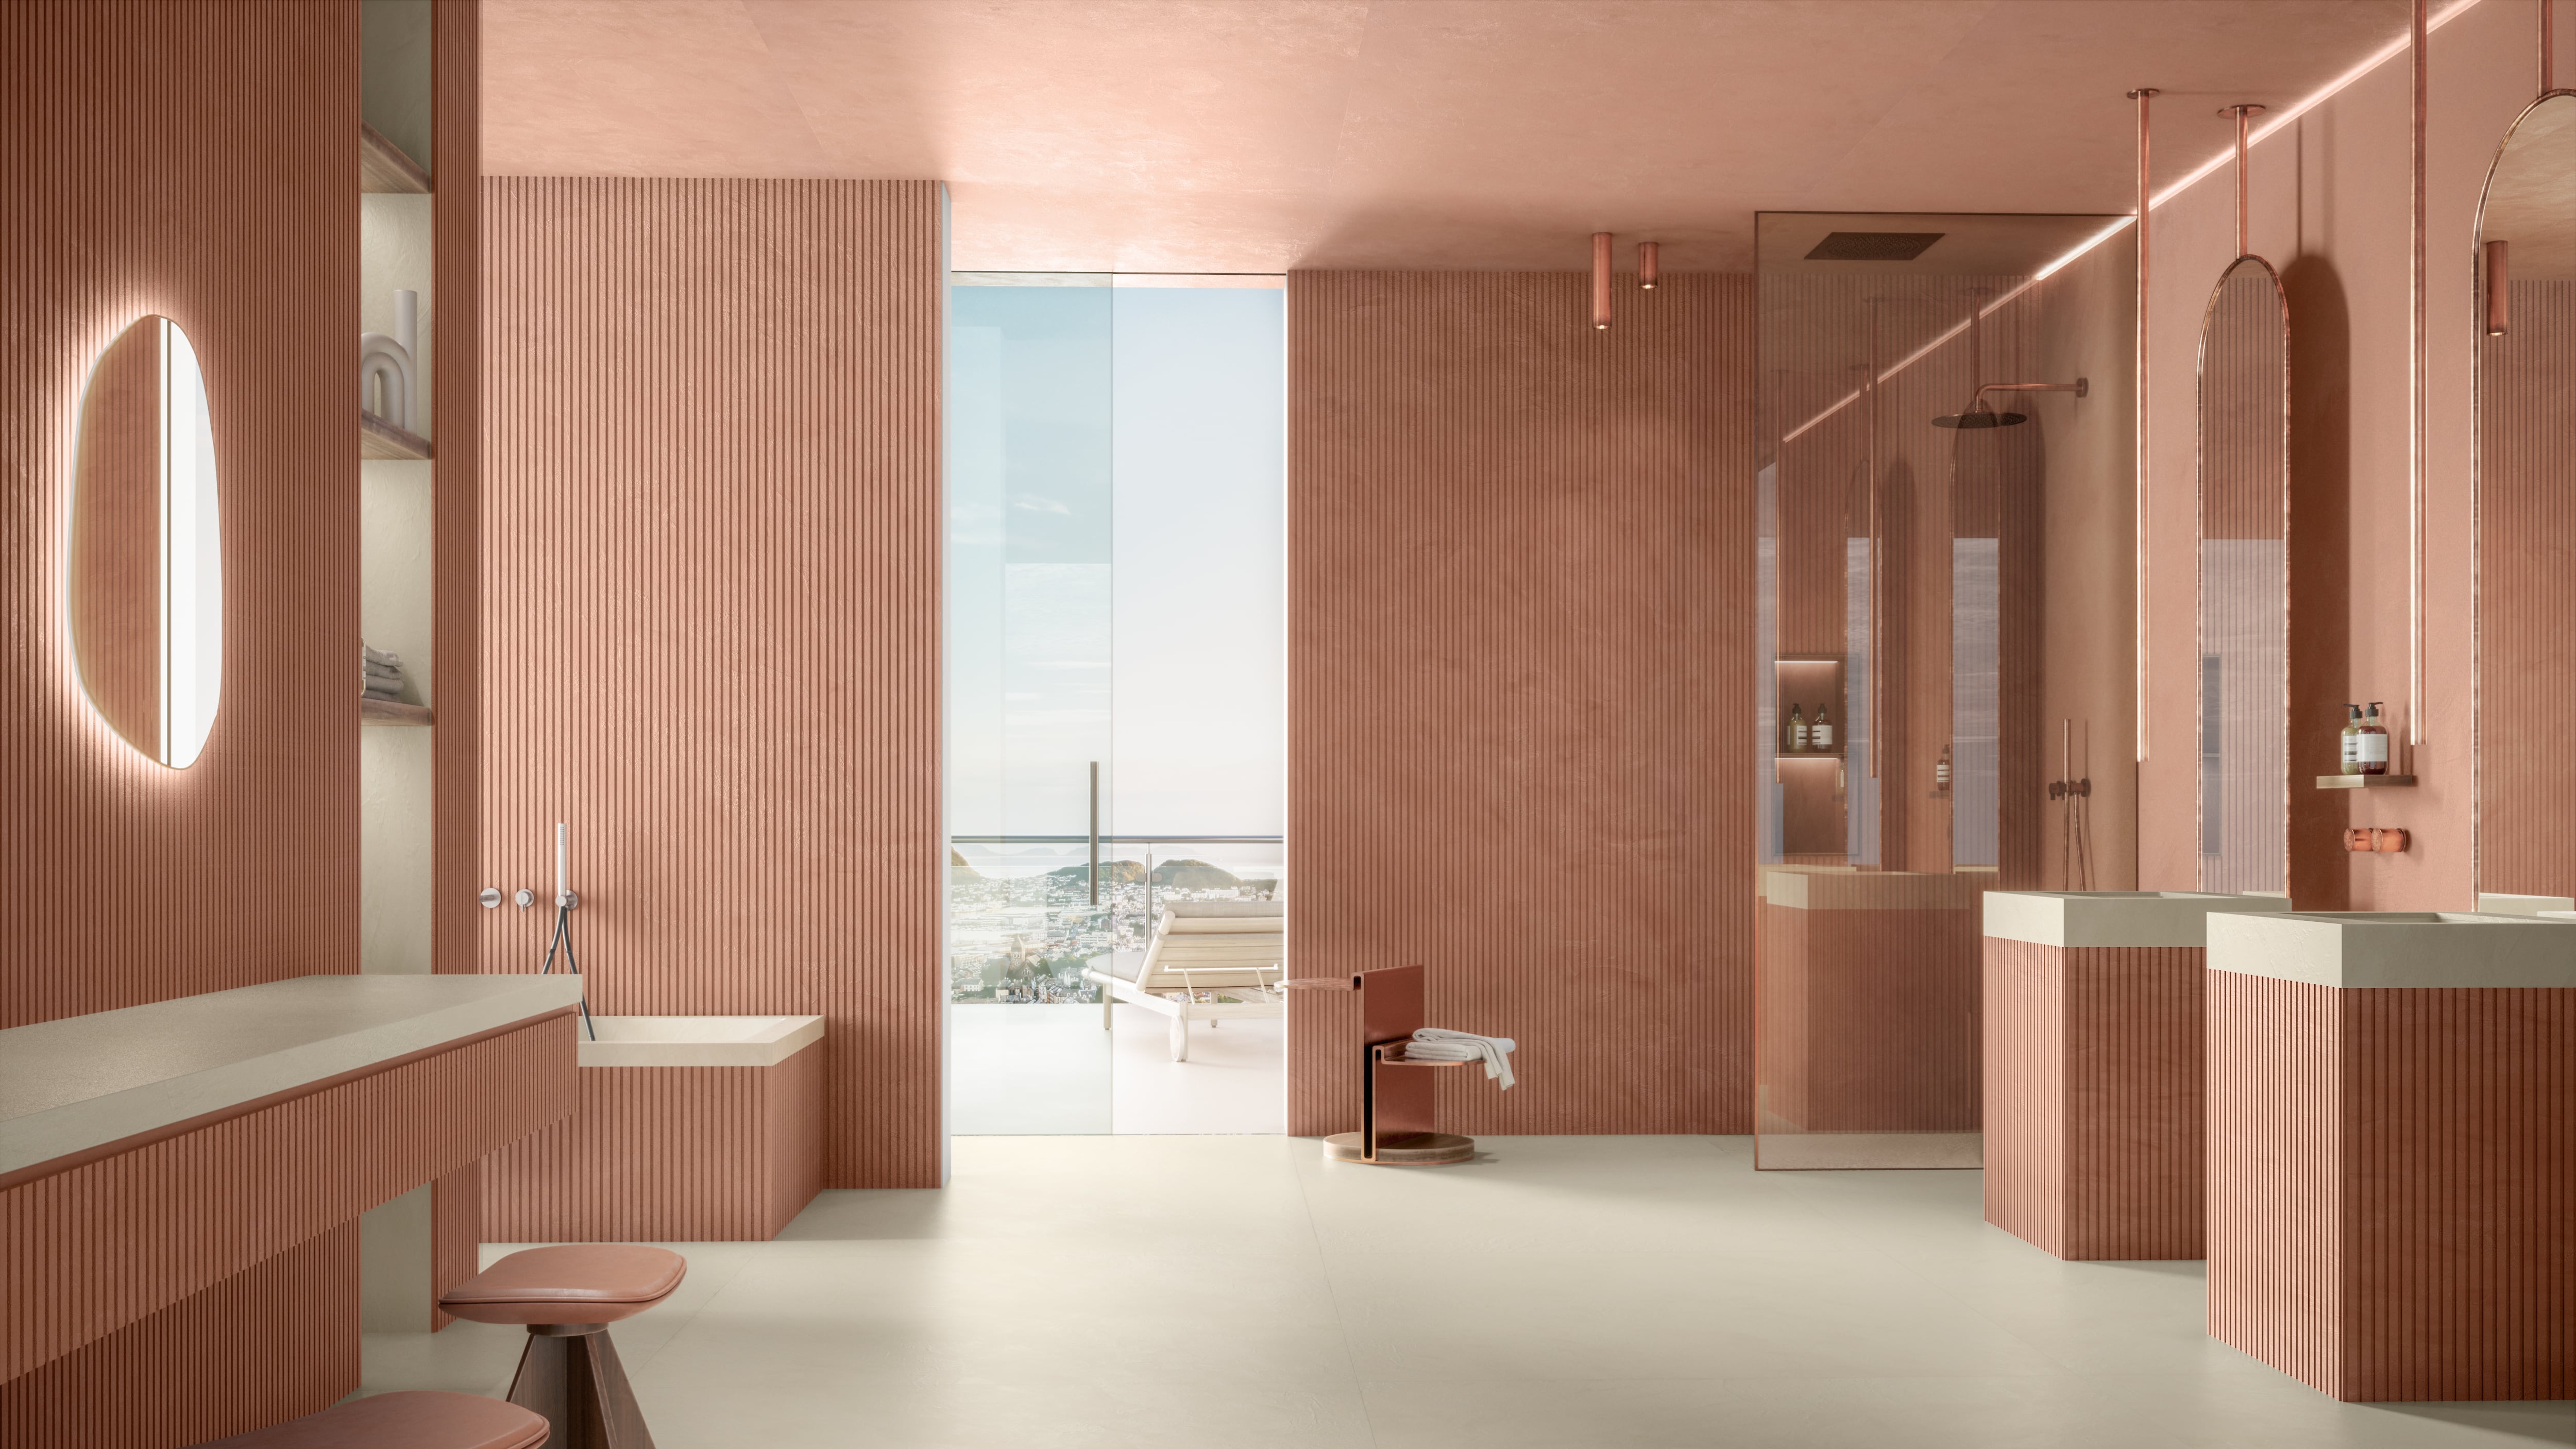 El diseño de interiores ha redefinido la manera en que concebimos y diseñamos nuestros baños para presentarnos diferentes propuestas donde el diseño, los materiales, los muebles y la tecnología se fusionan para crear espacios que van más allá de la mera funcionalidad